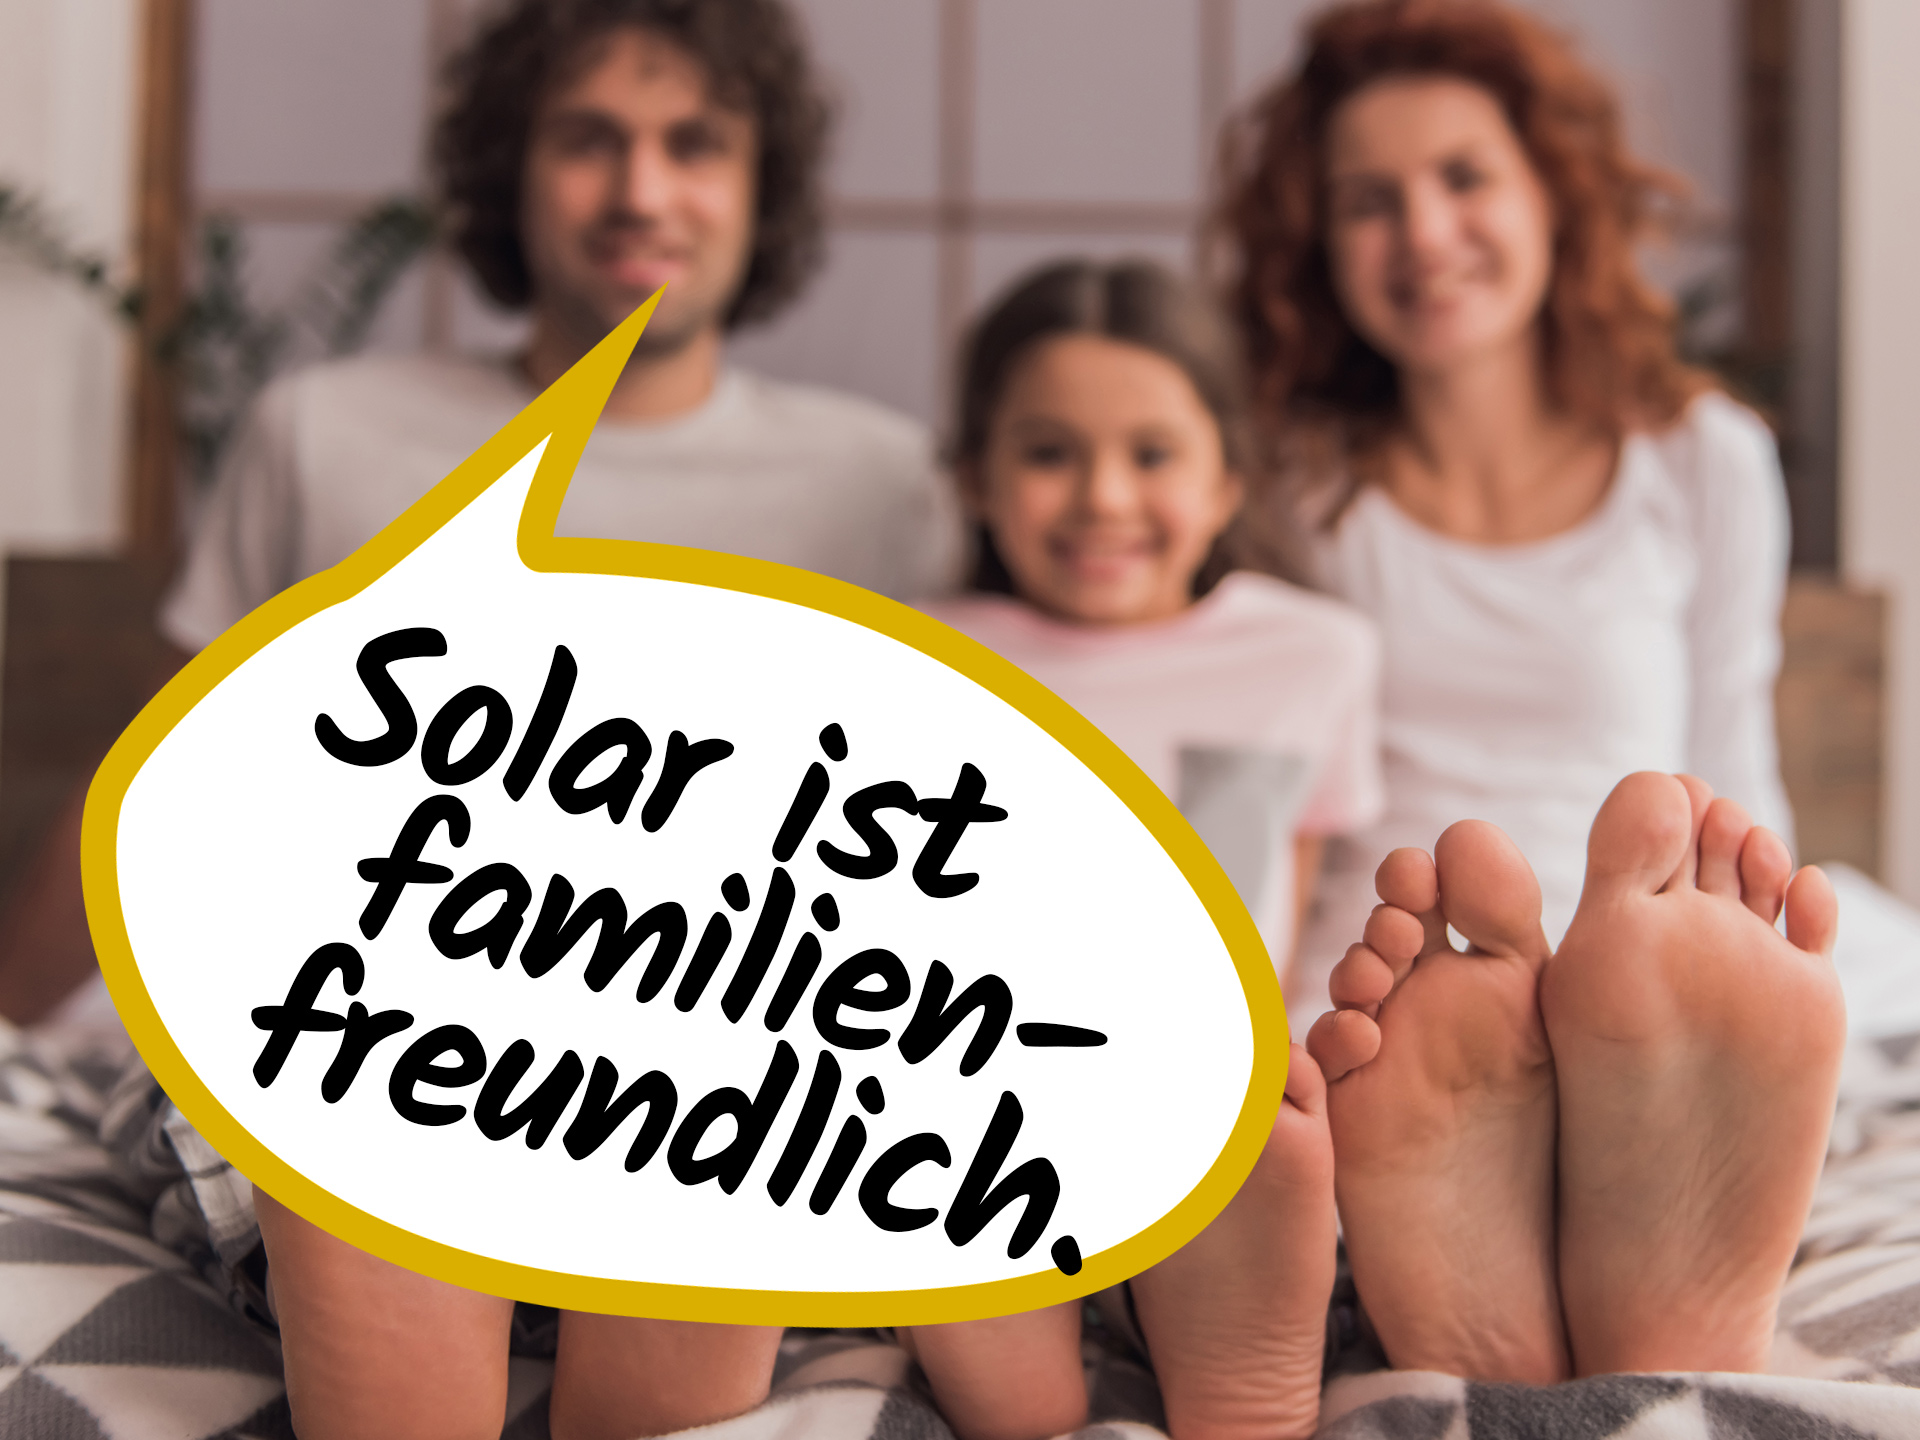 Solar ist familienfreundlich.